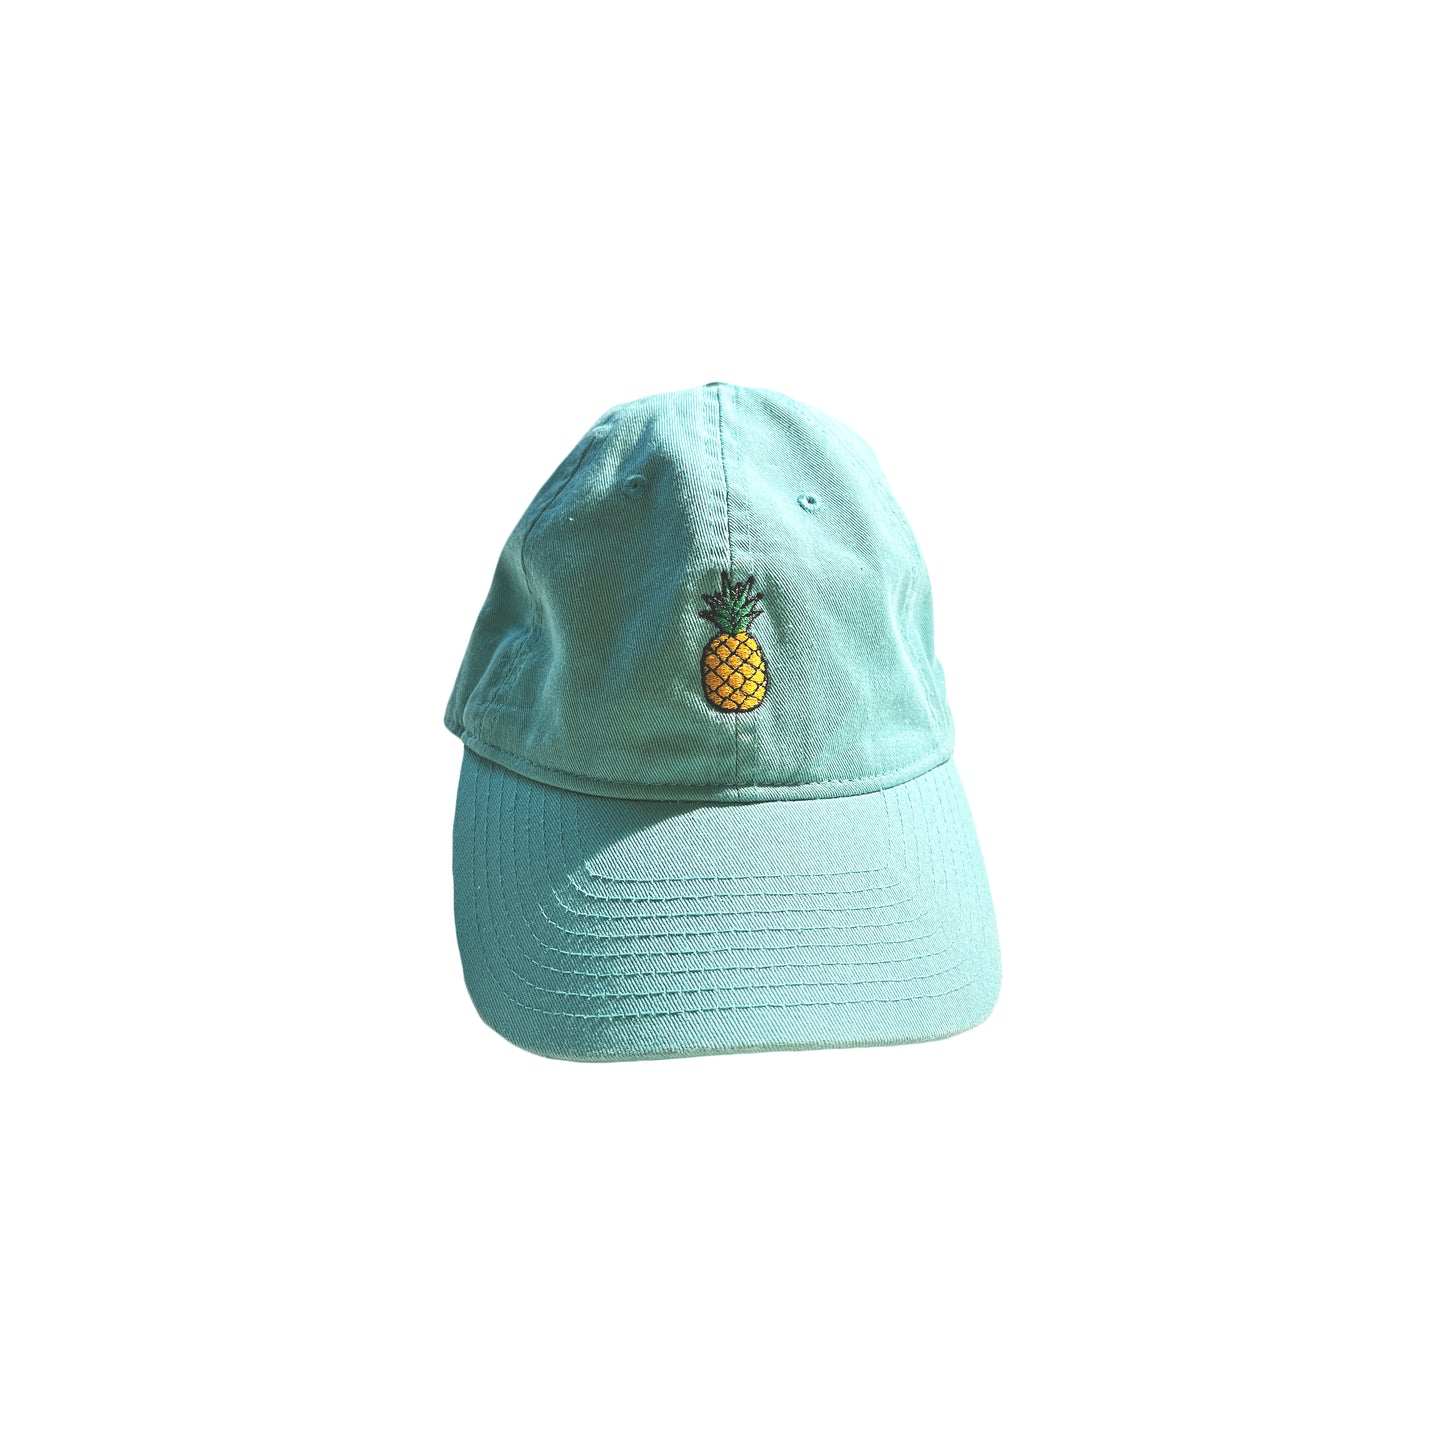 Vintage Pineapple Hat Dad Cap